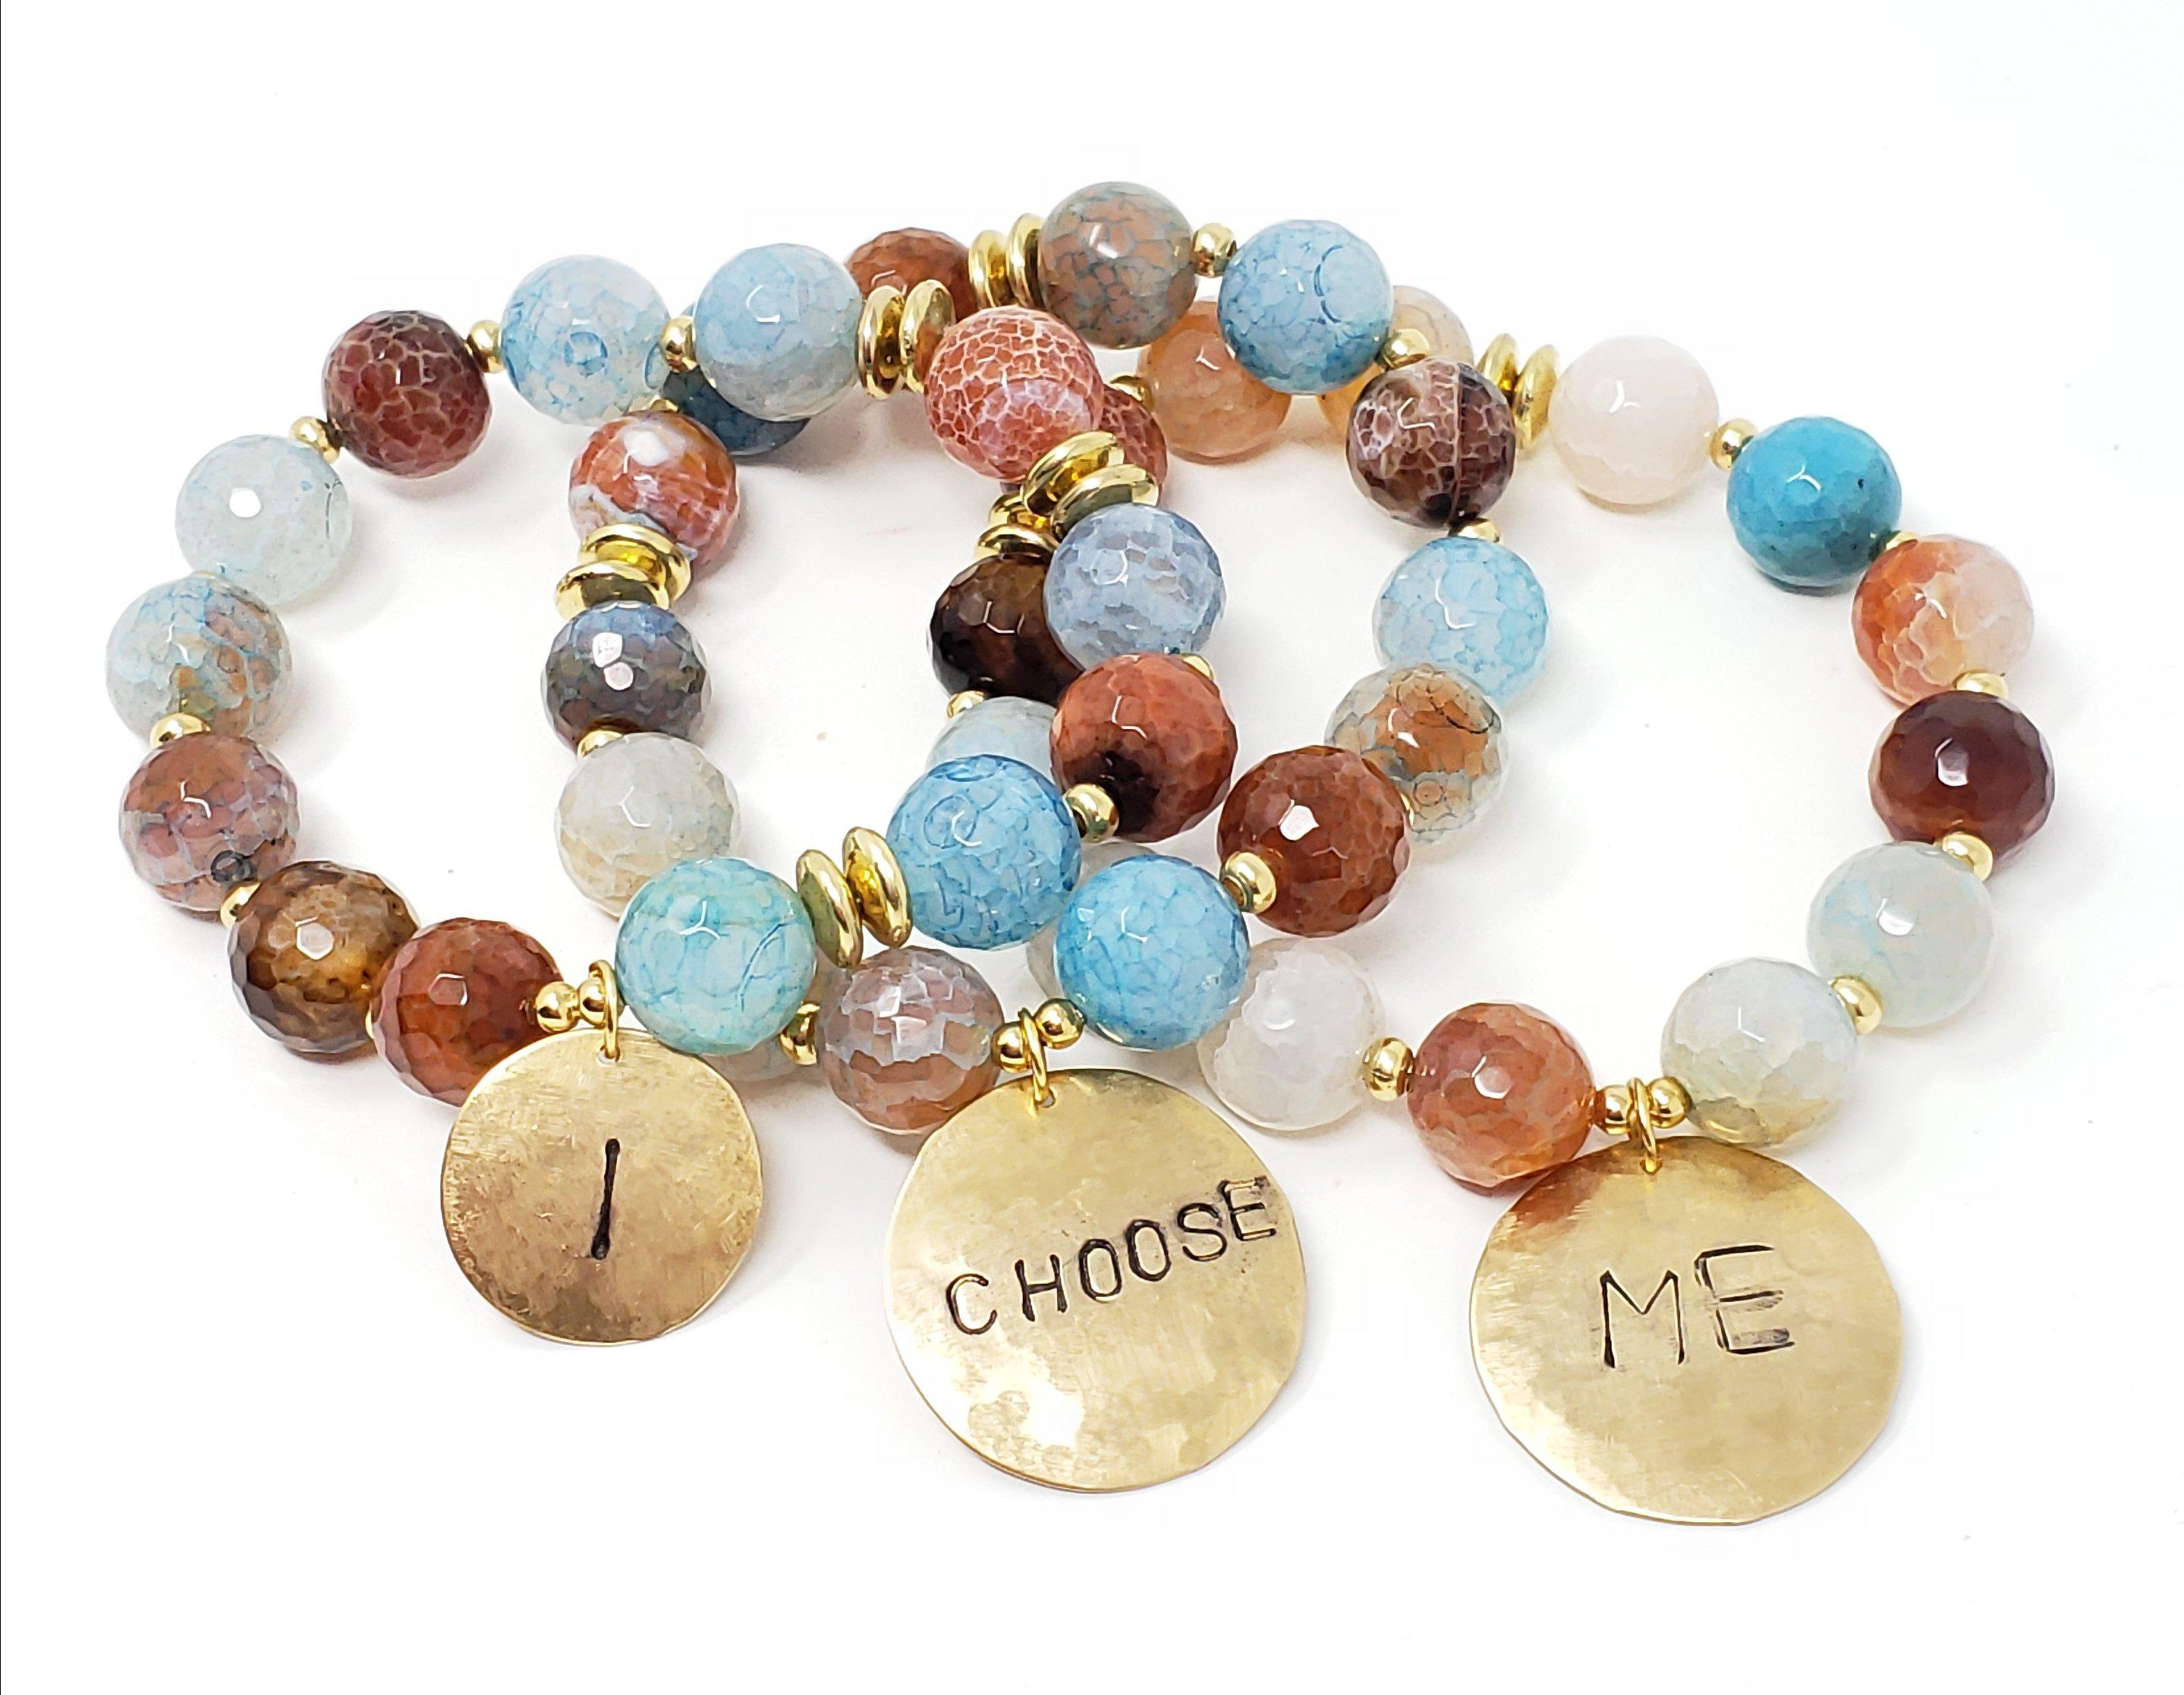 "I Choose Me" Affirmation Bracelets